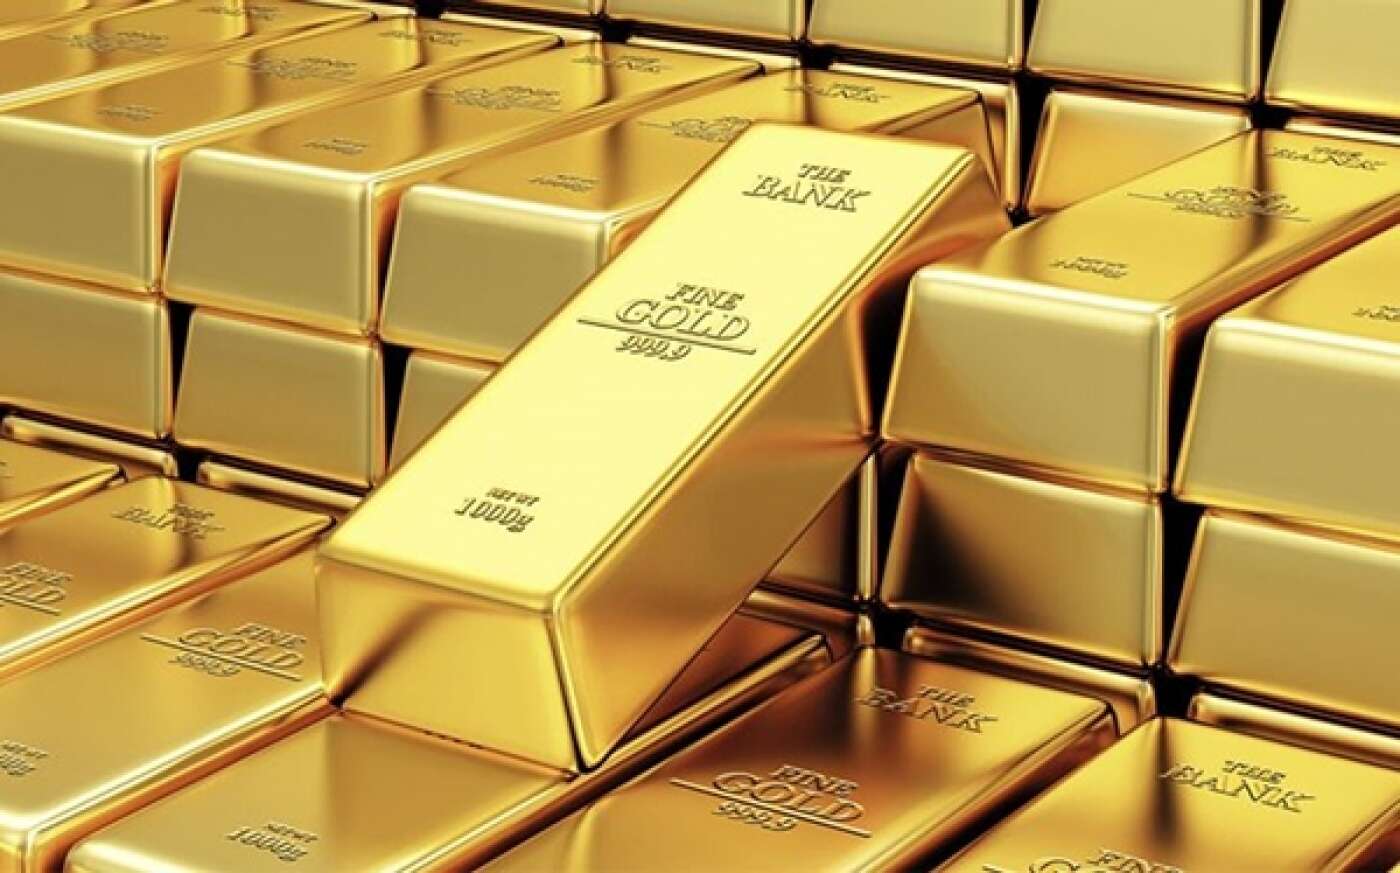 سعر الذهب في تركيا اليوم